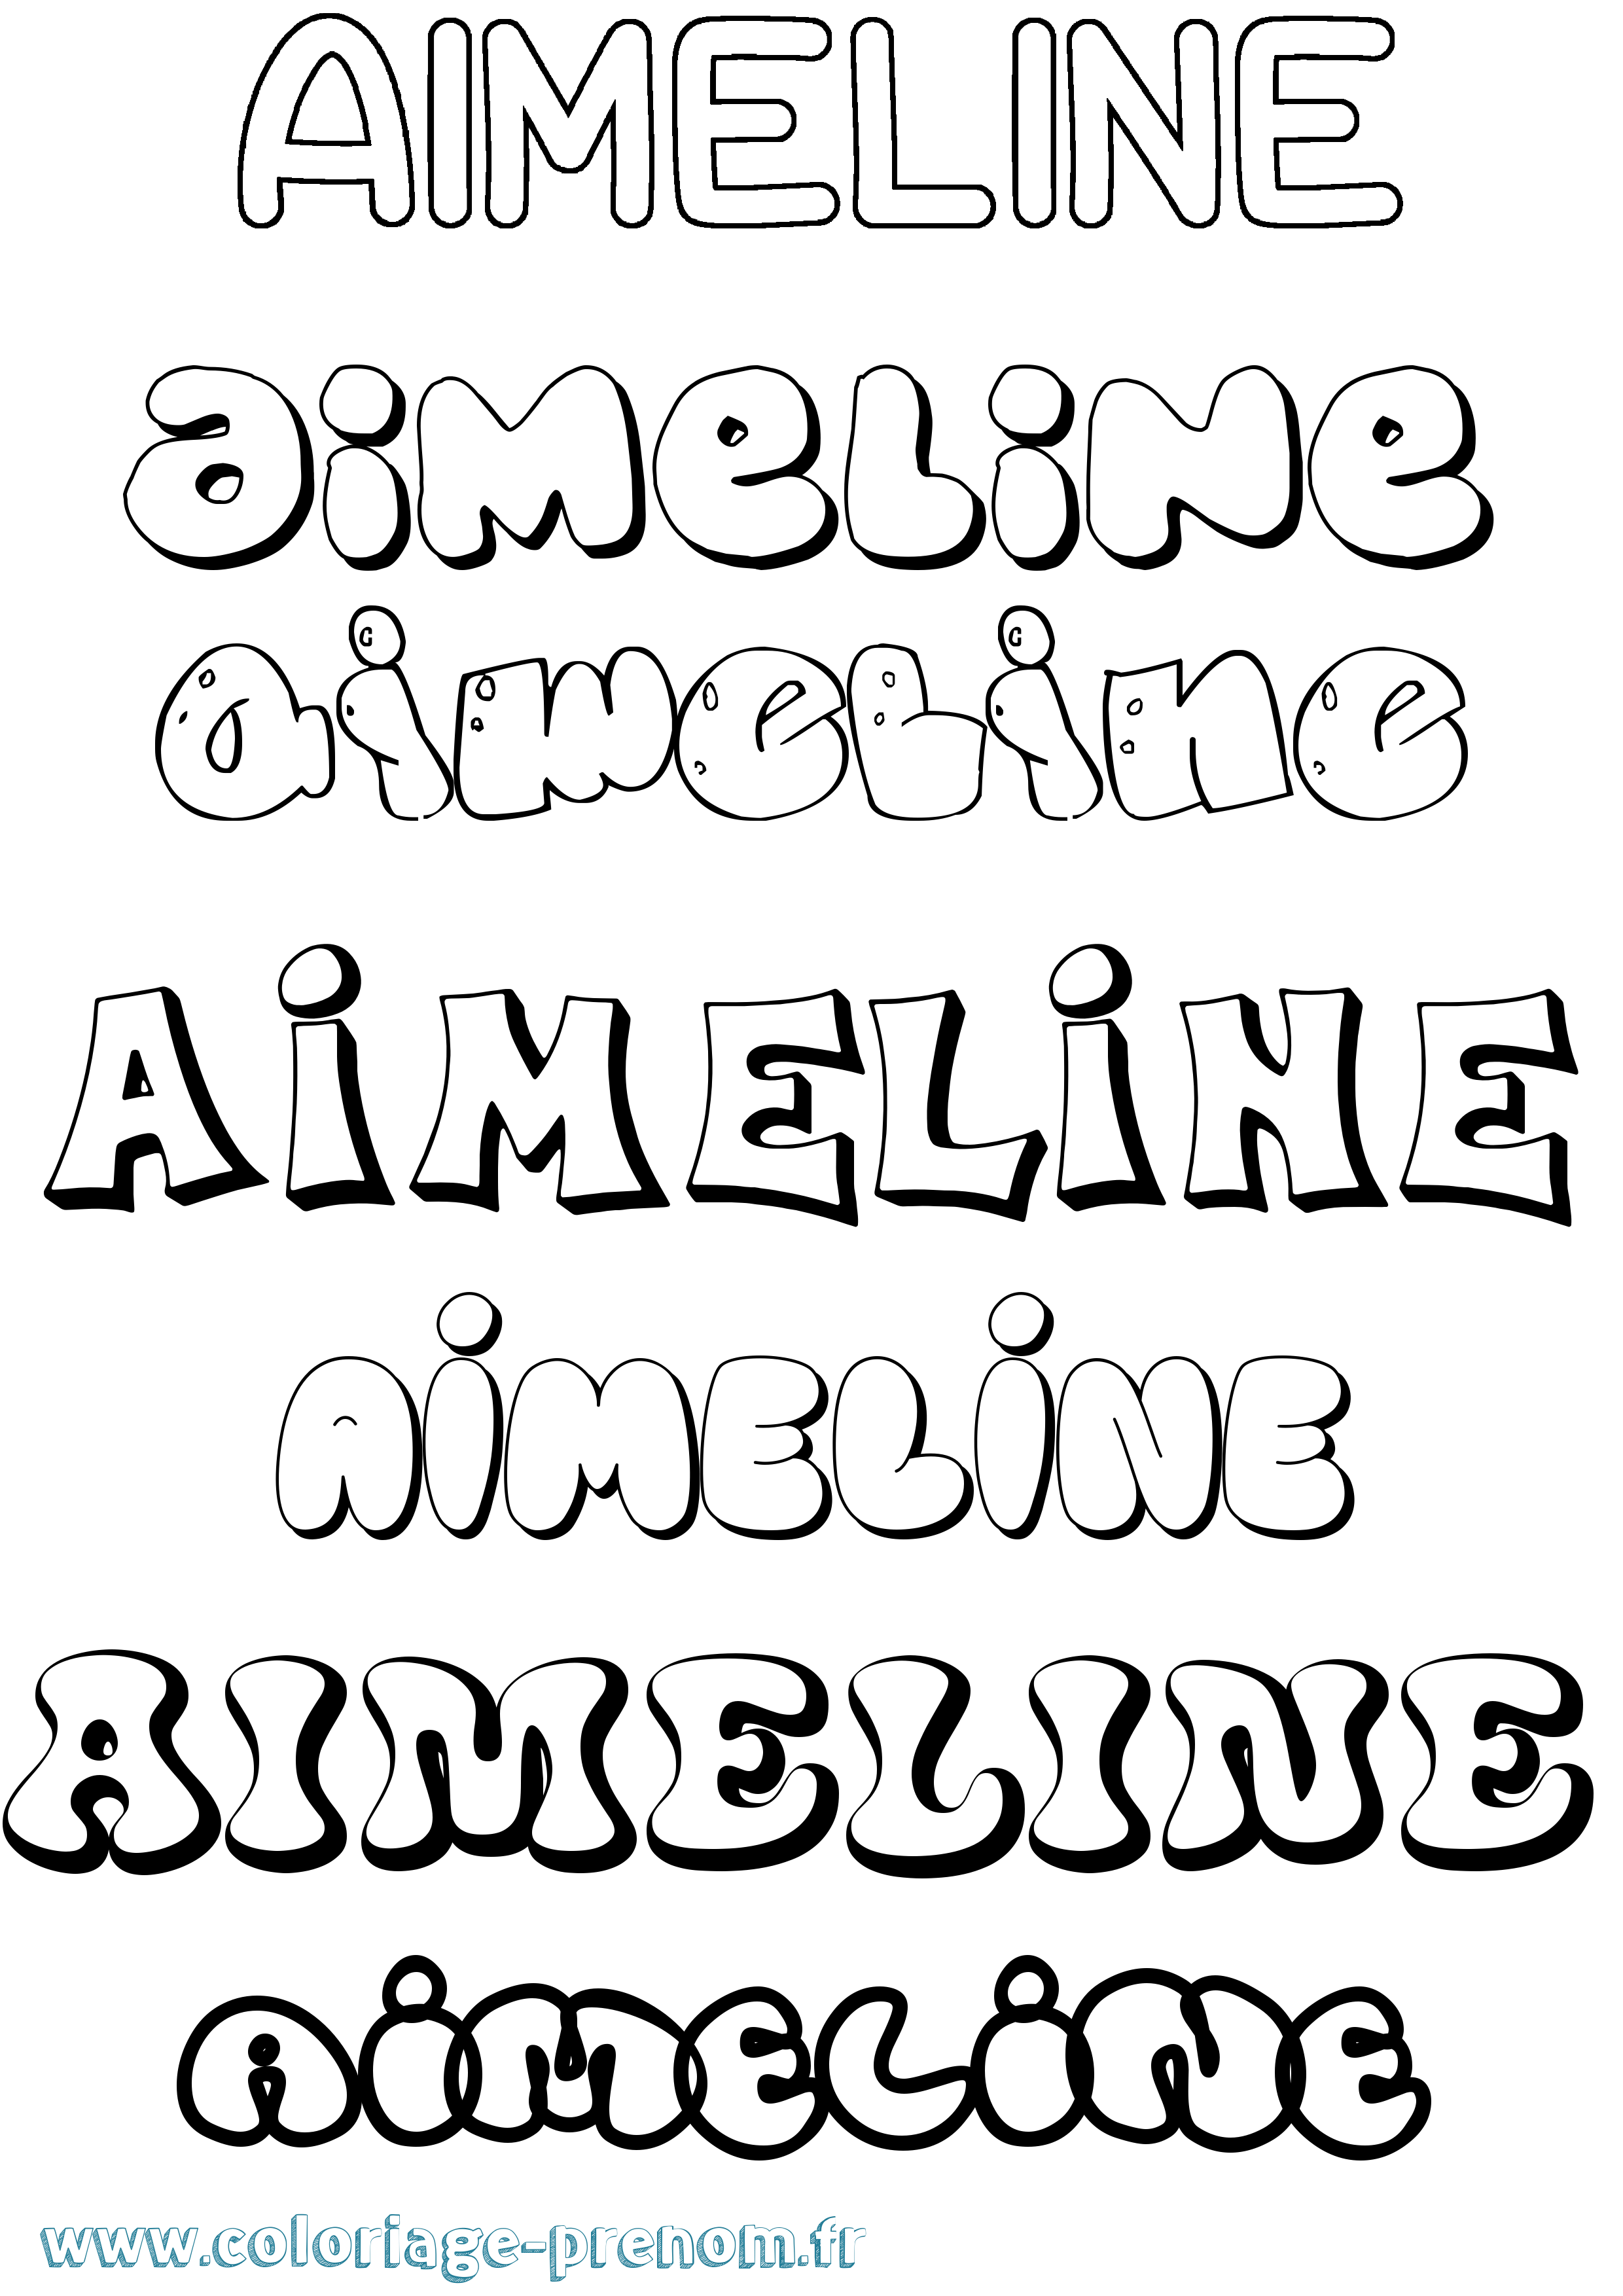 Coloriage prénom Aimeline Bubble